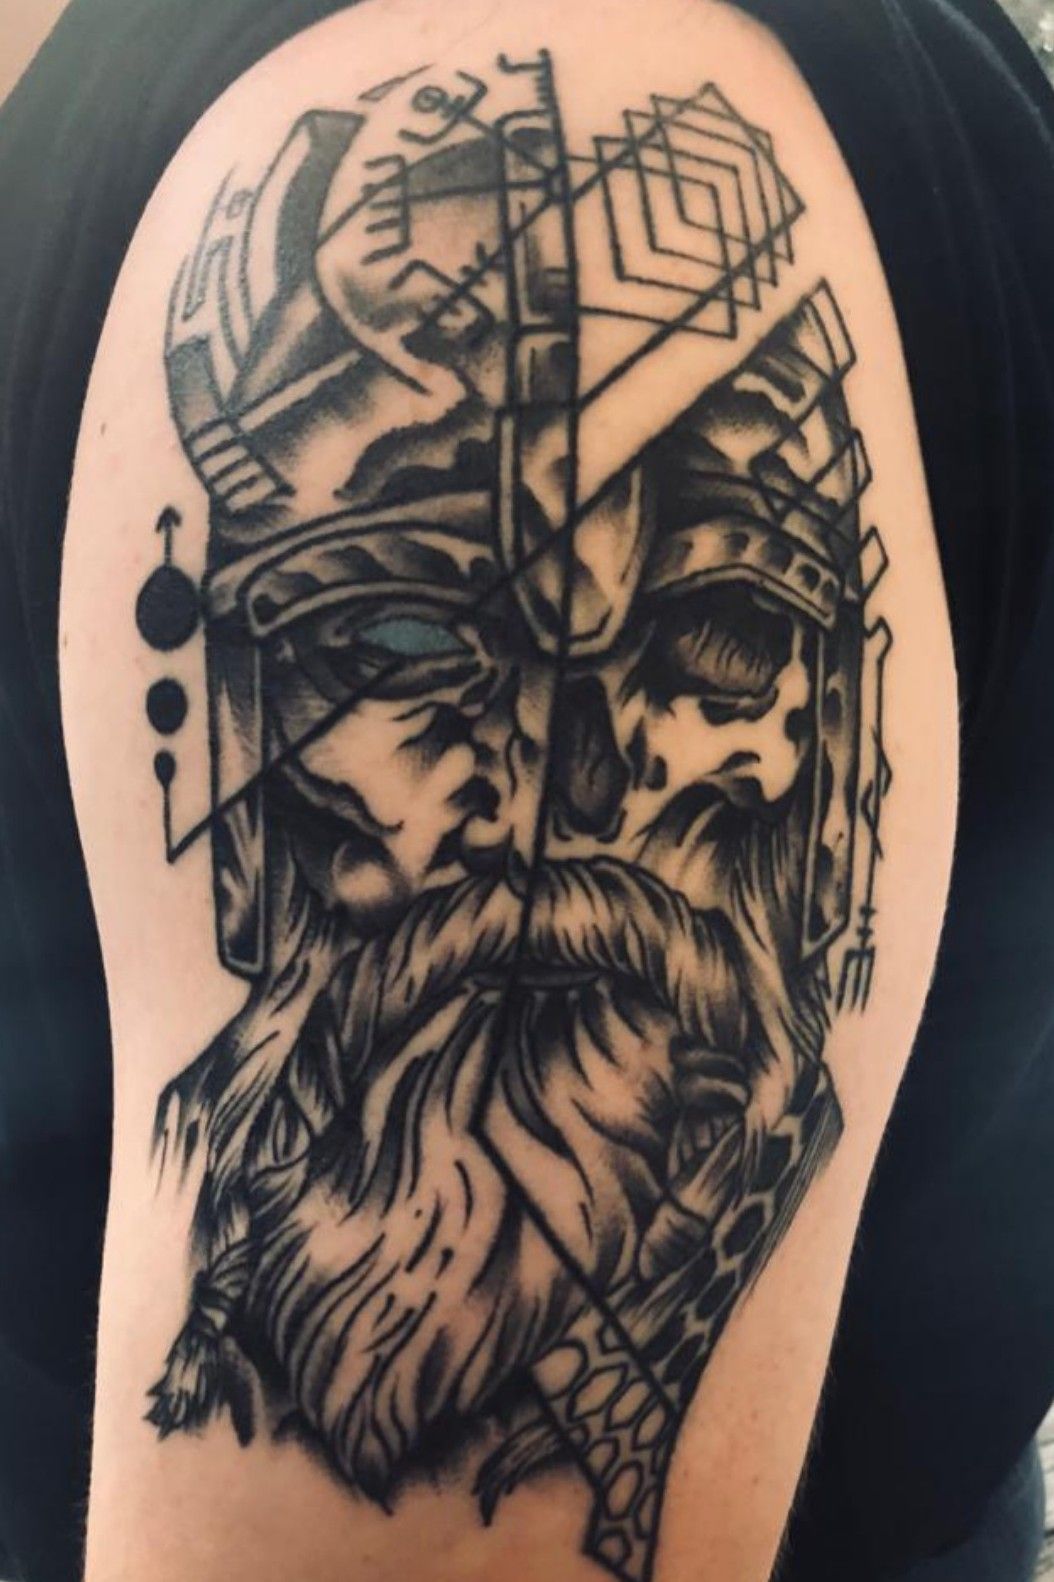 Odin God & Skull Temporary Tattoo - CrewSkull®